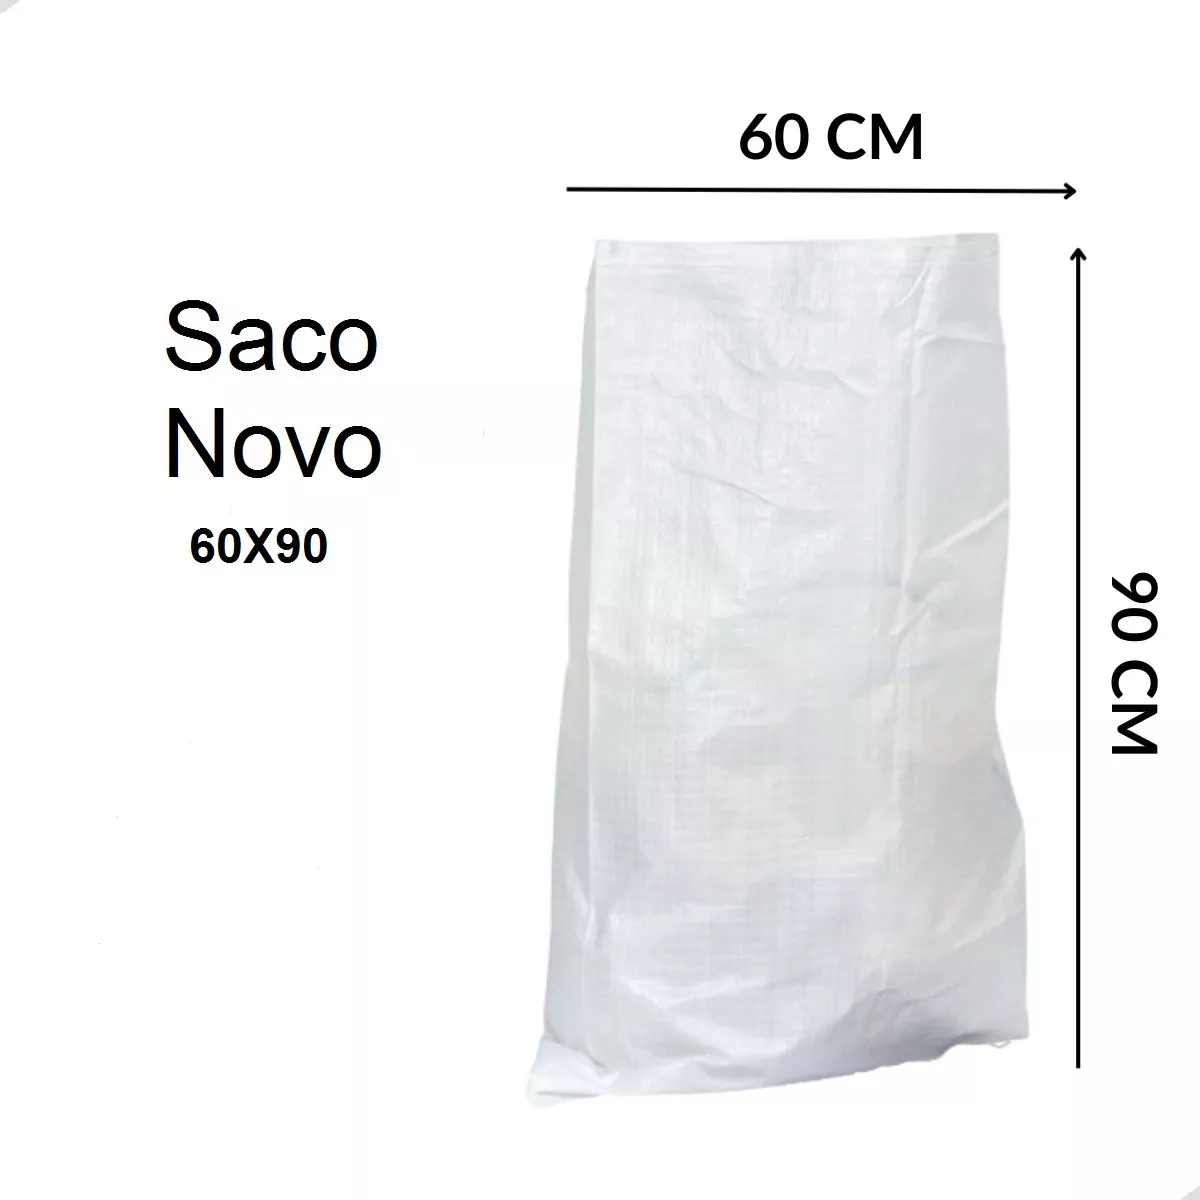 Primeira imagem para pesquisa de saco vazio 50kg